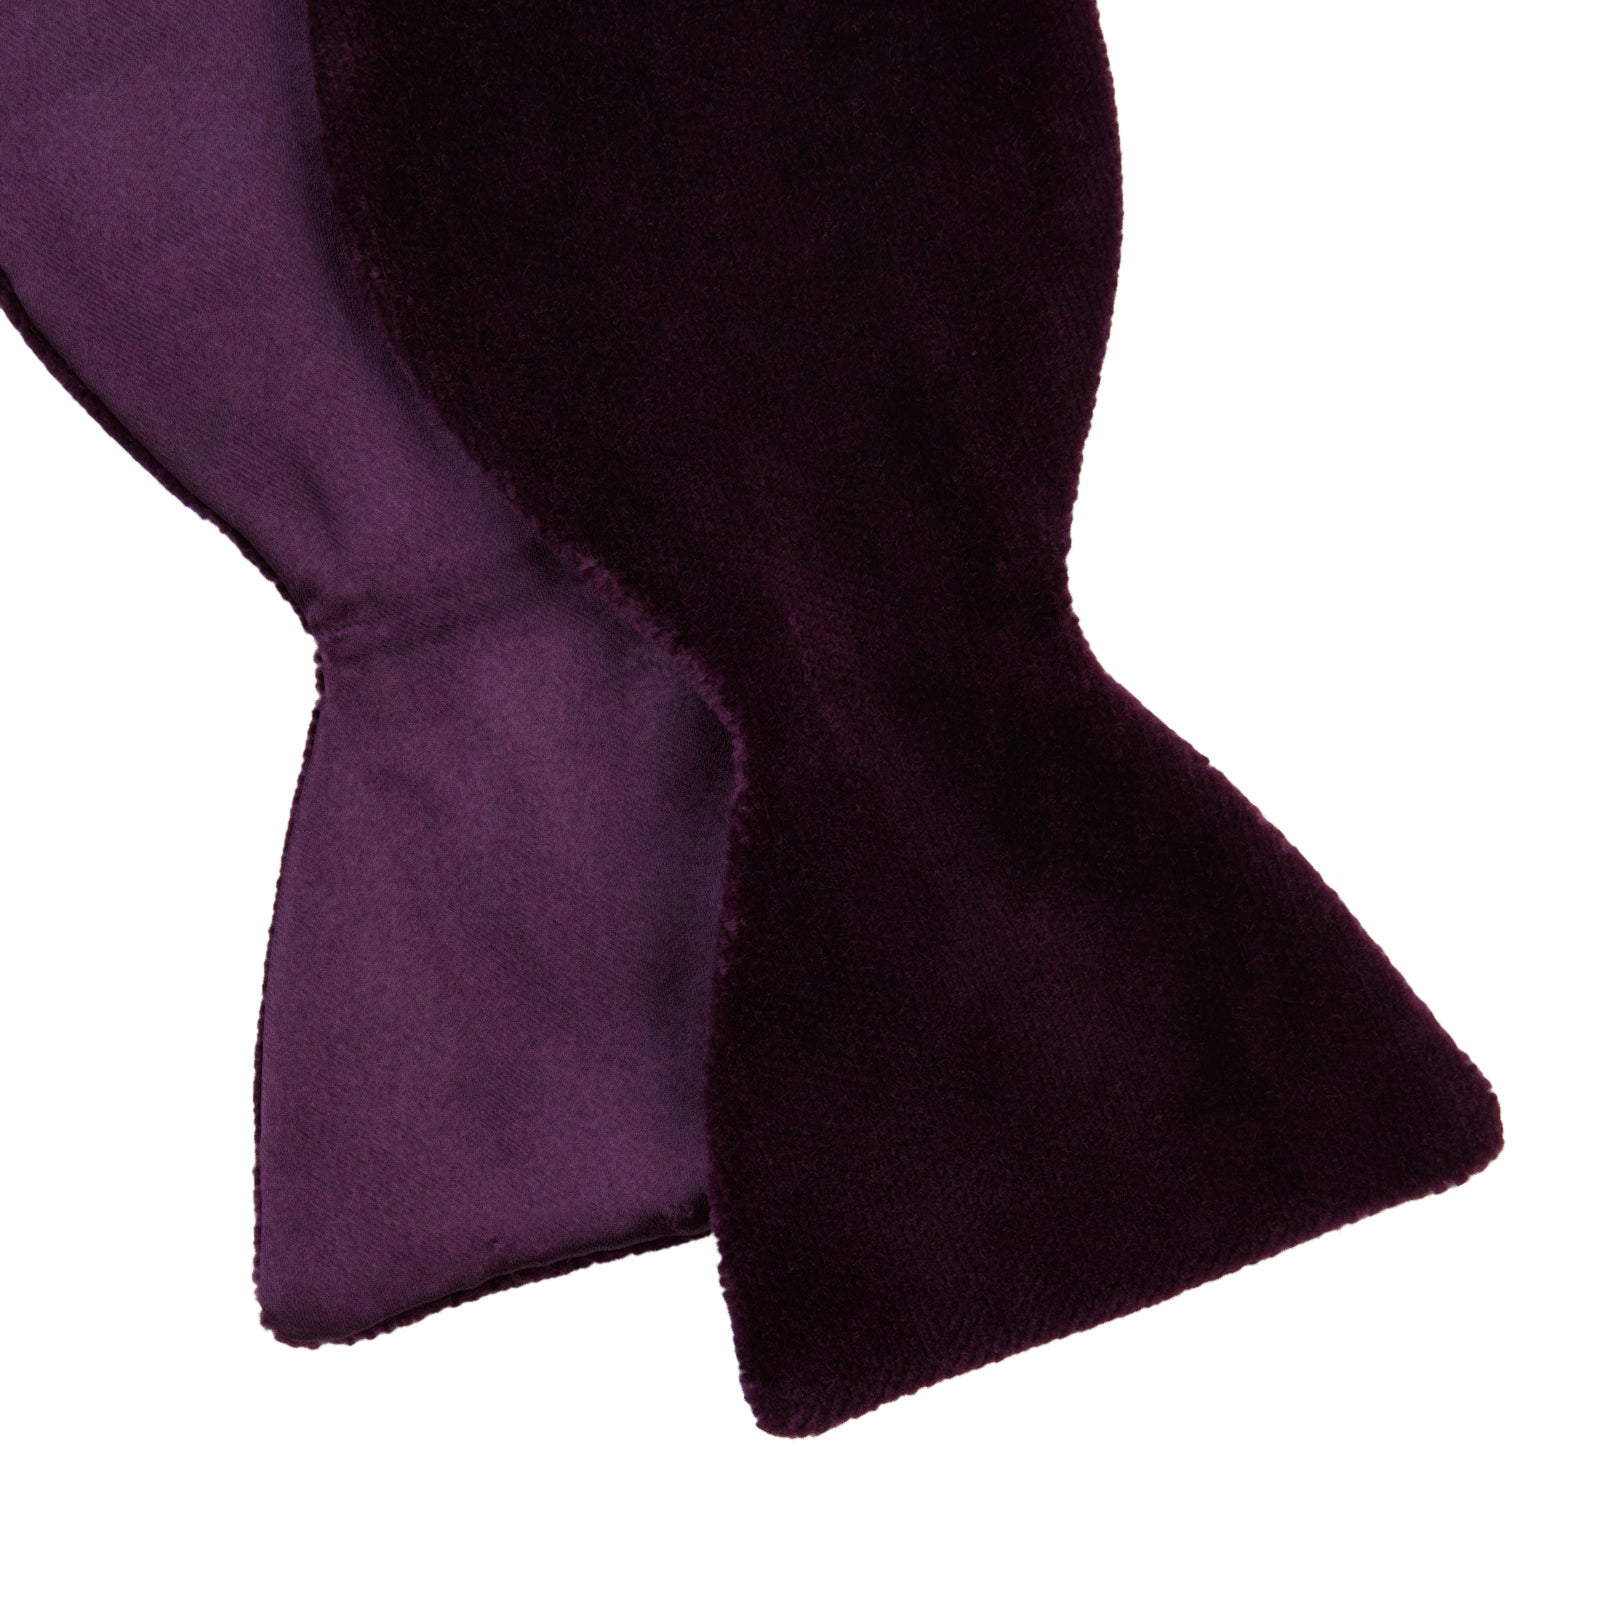 Purple Velvet Bow Tie